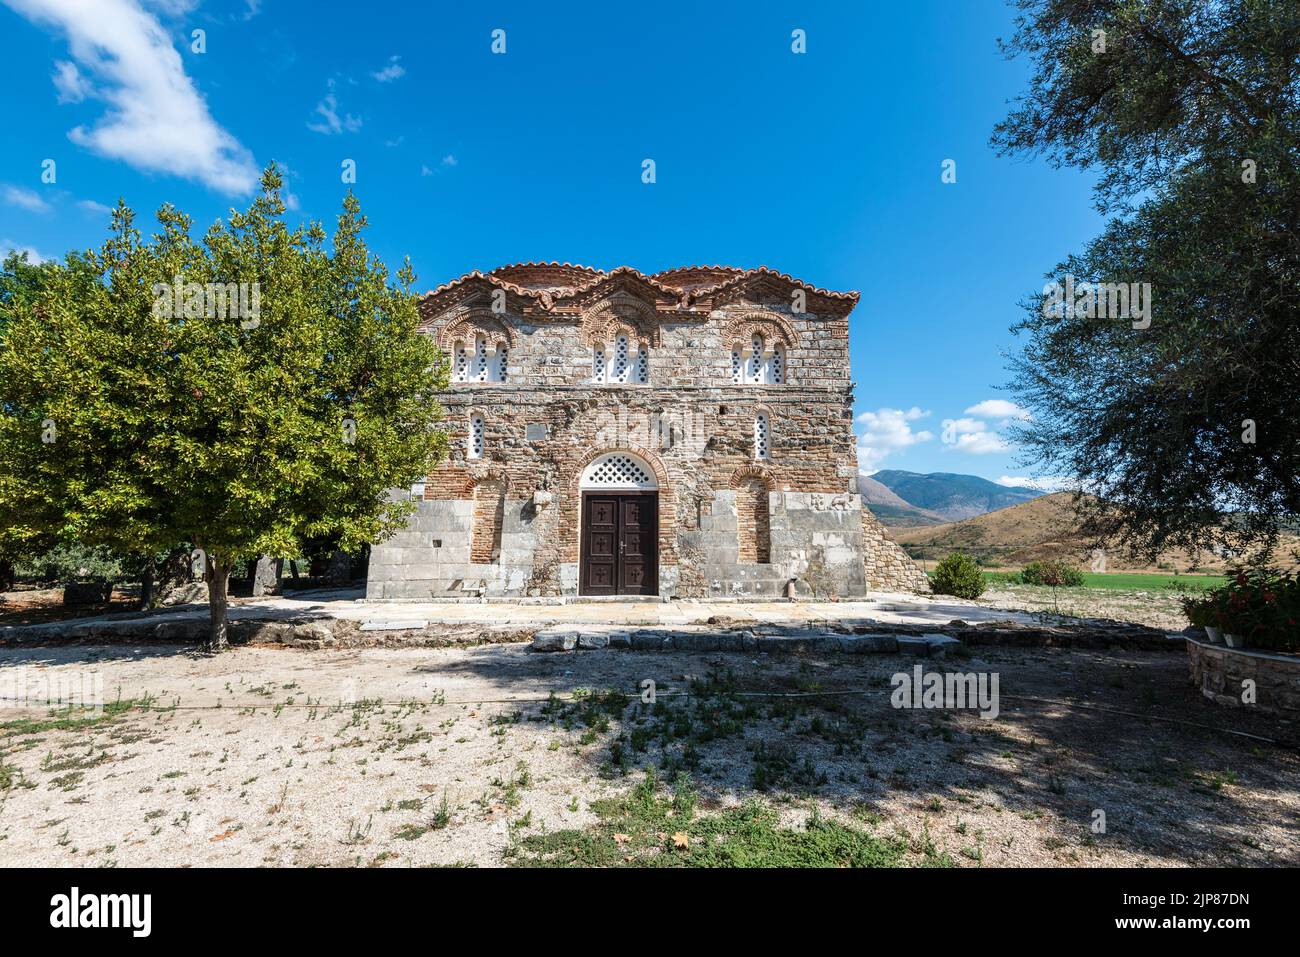 Mesopotam, Albania - 10 de septiembre de 2021: El Monasterio de San Nicolás en Mesopotam, una iglesia del siglo 11th que fue construida en el sitio de una OR anterior Foto de stock